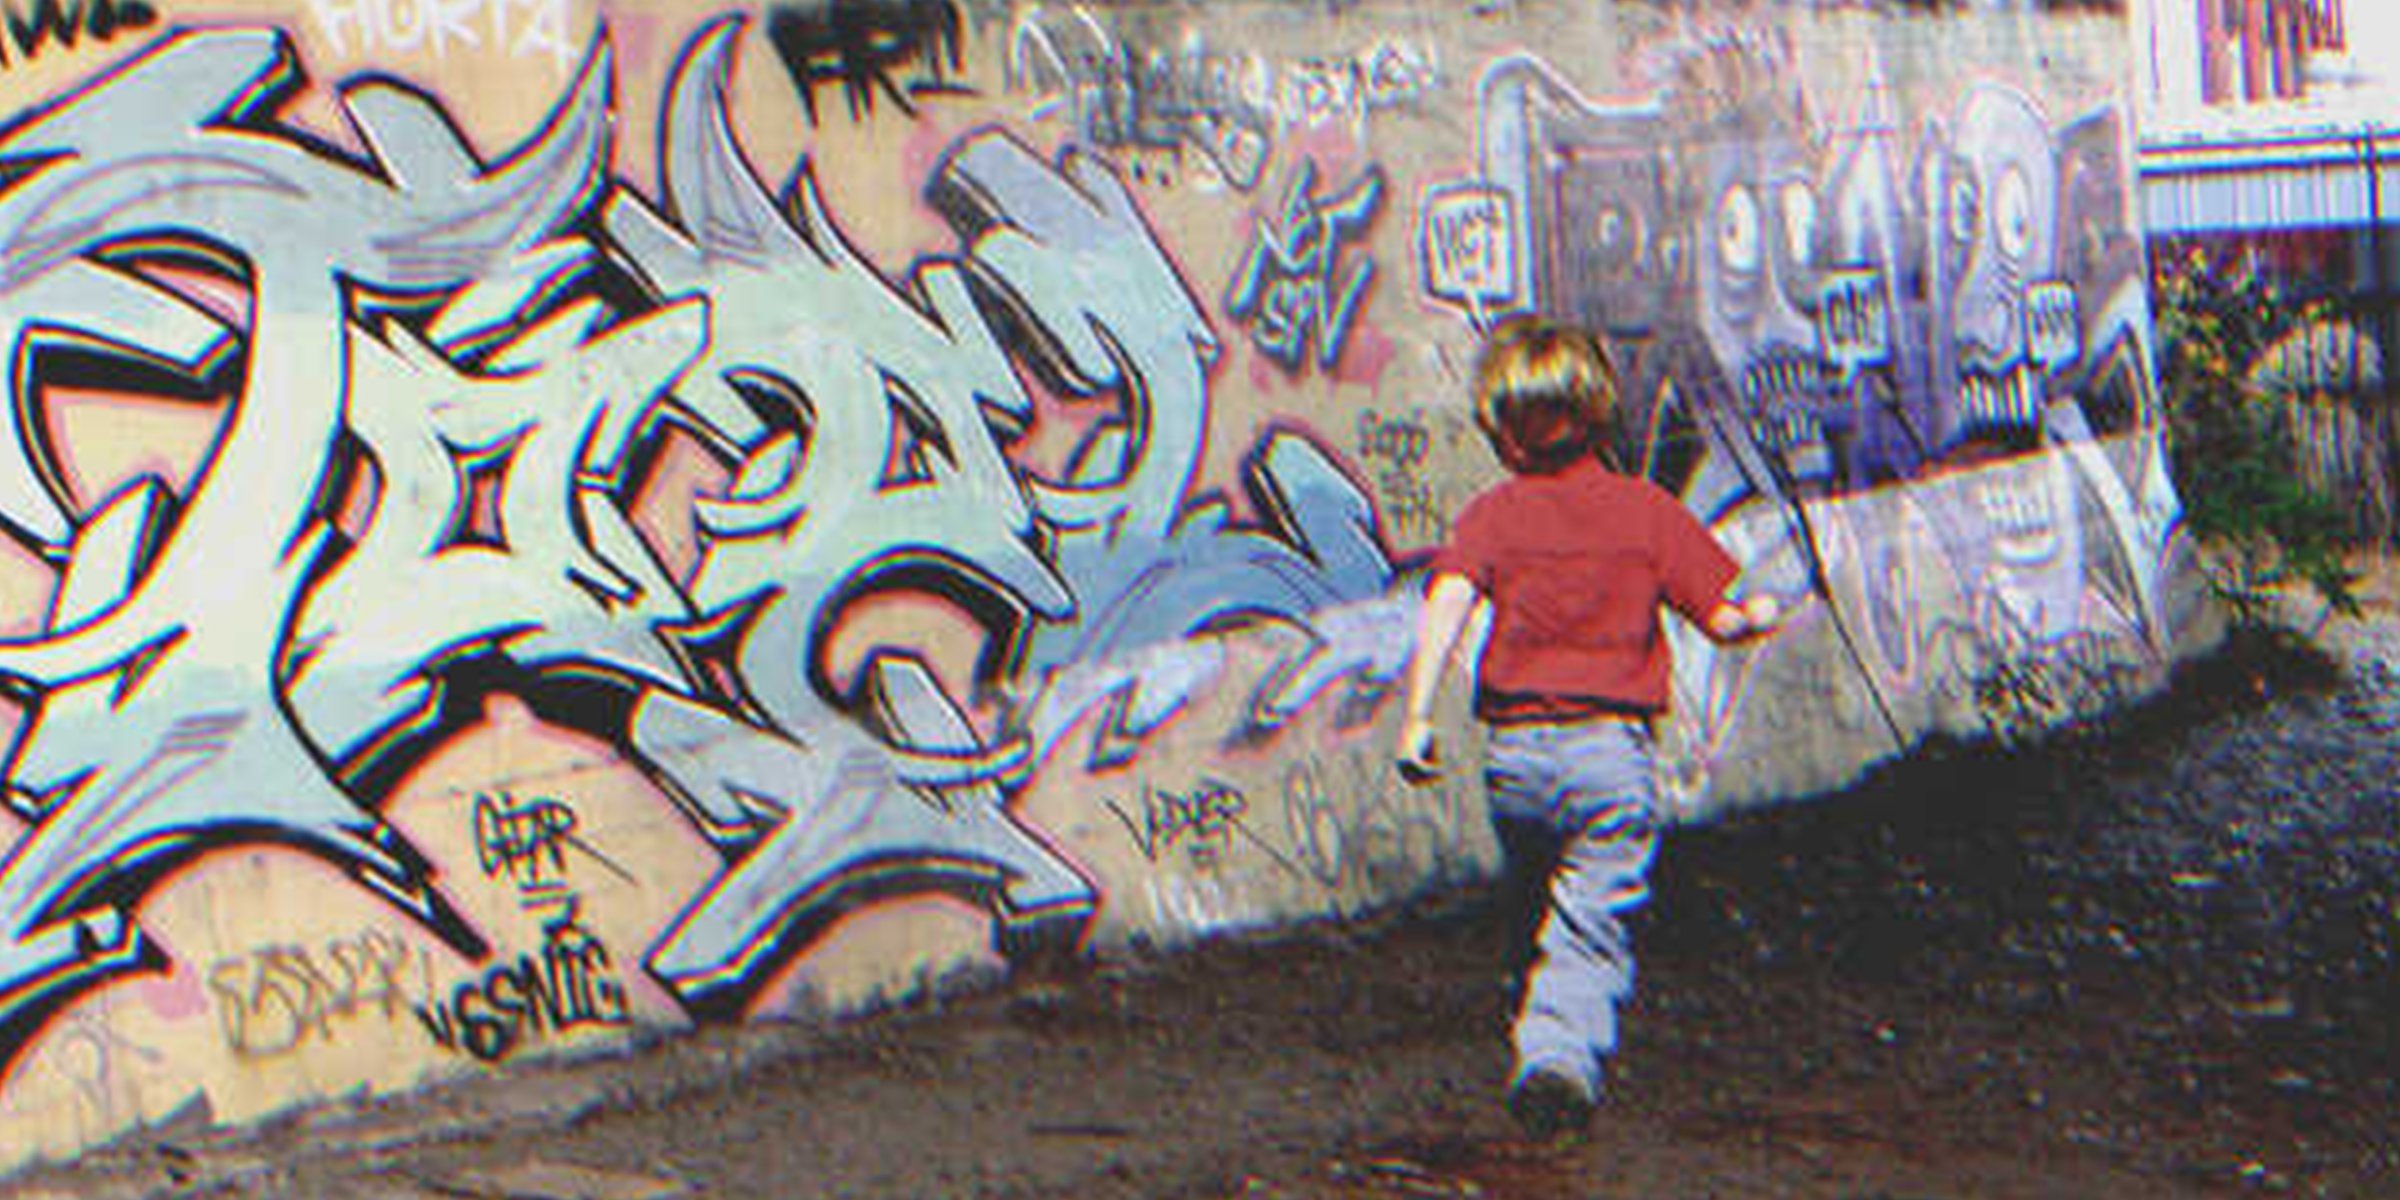 Ein Junge auf der Straße| Quelle: Flickr